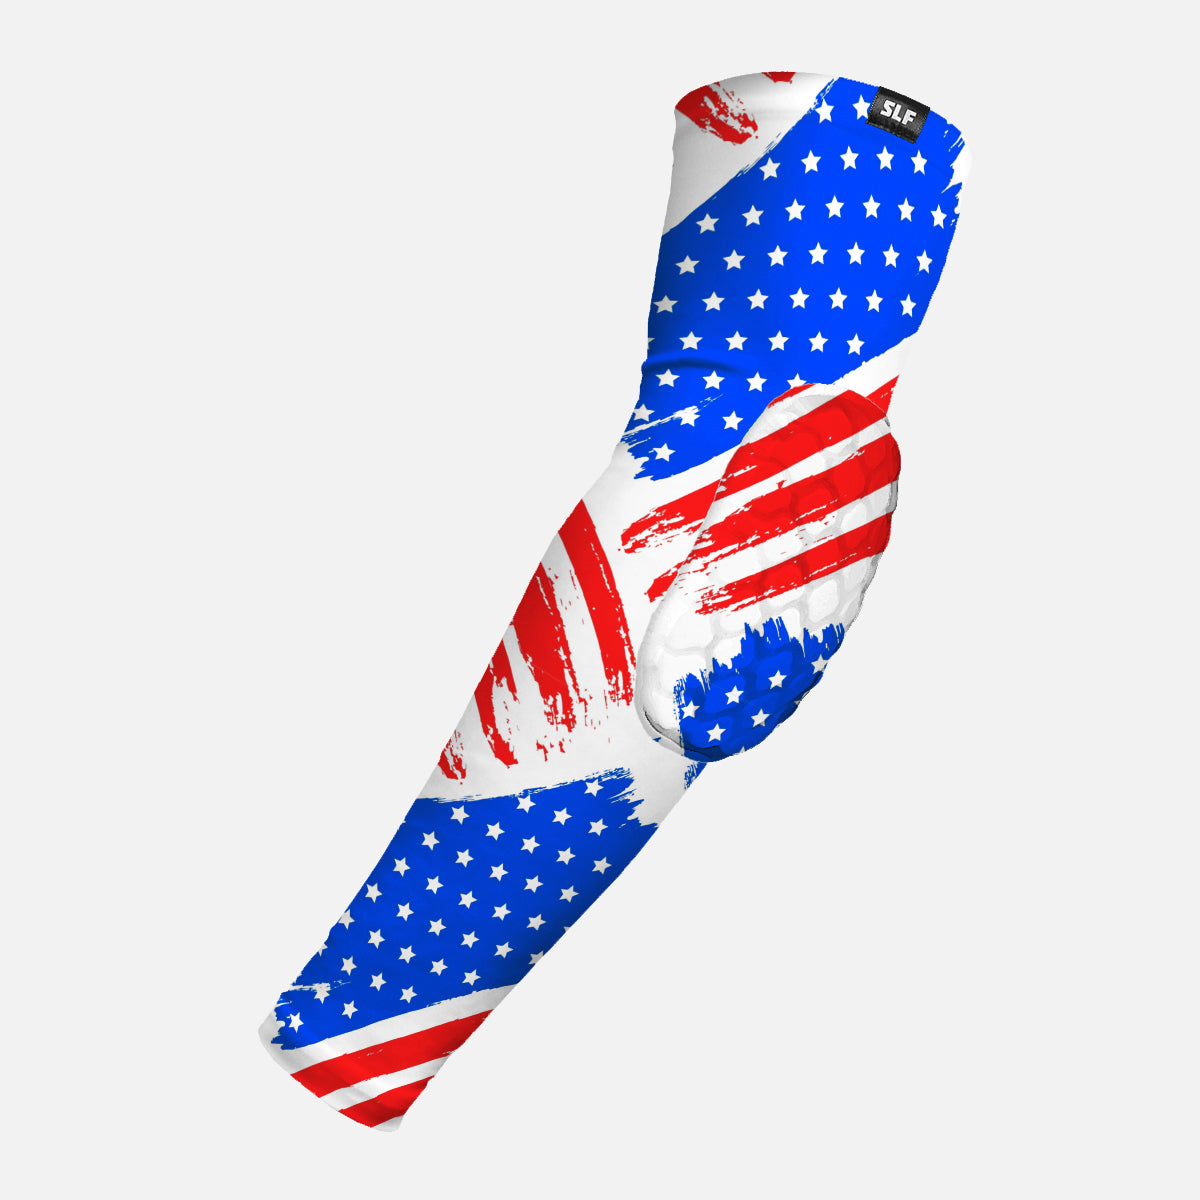 USA Brushed Flag Padded Arm Sleeve